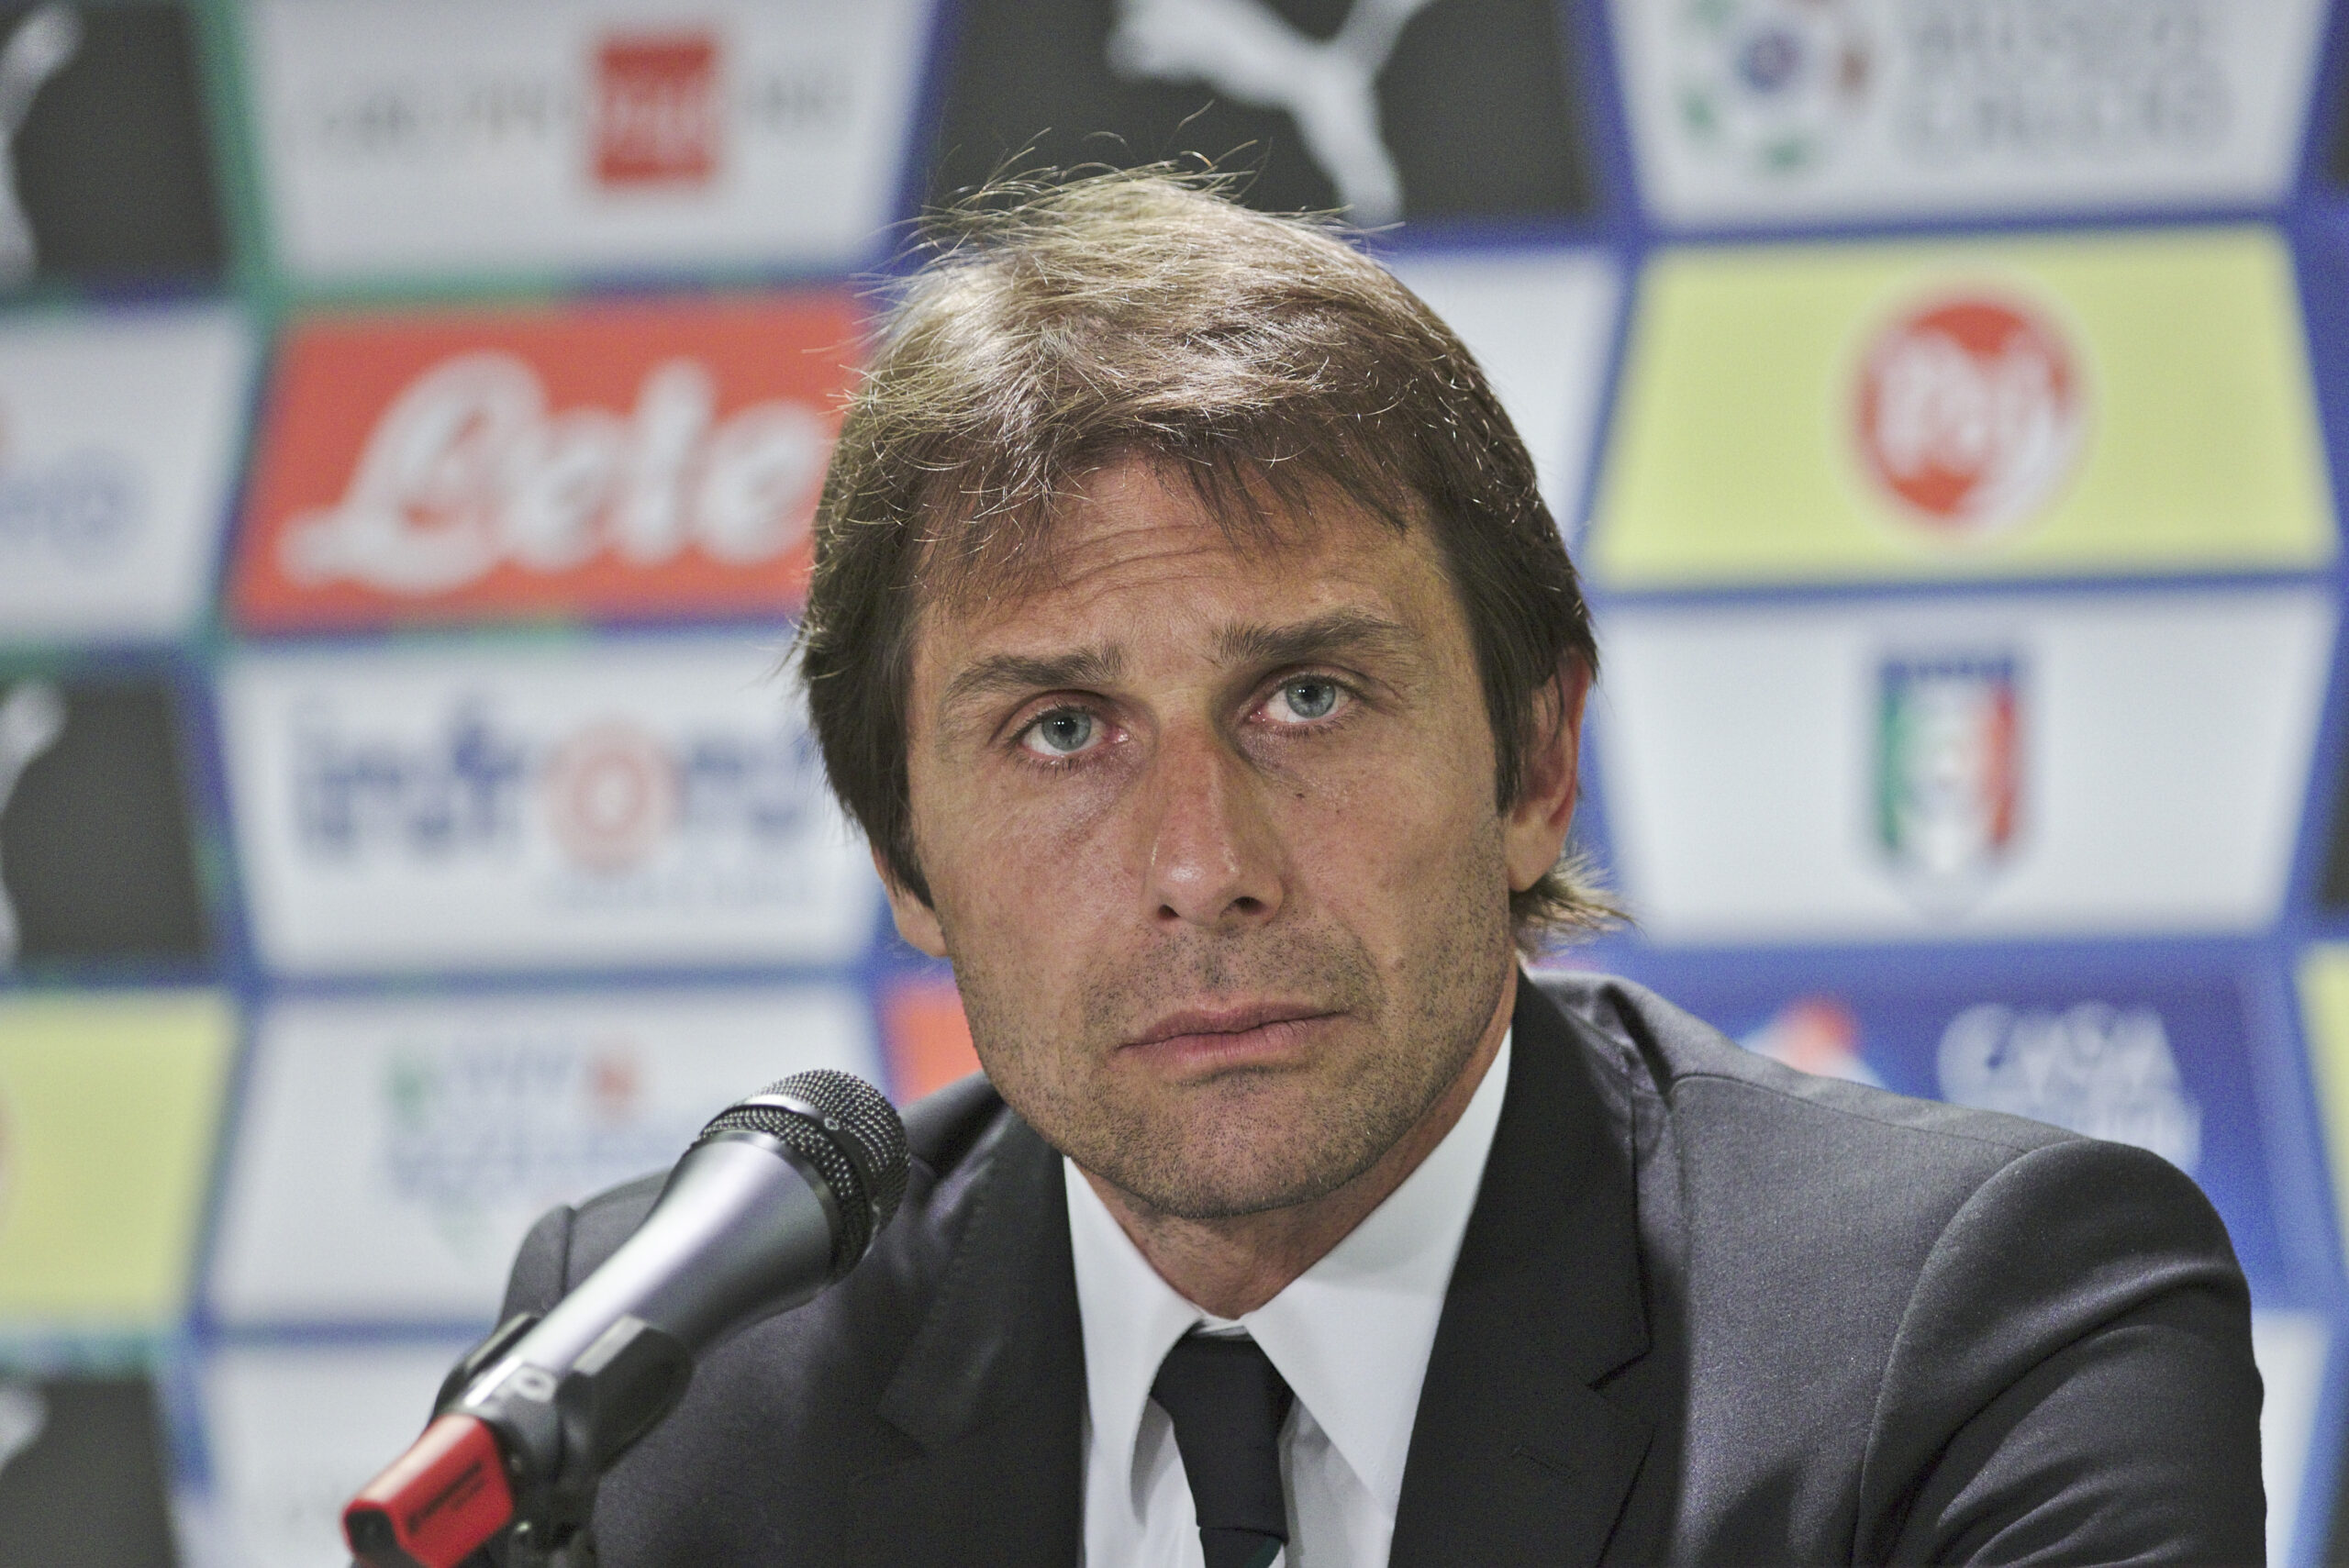 Antonio Conte during a press conference